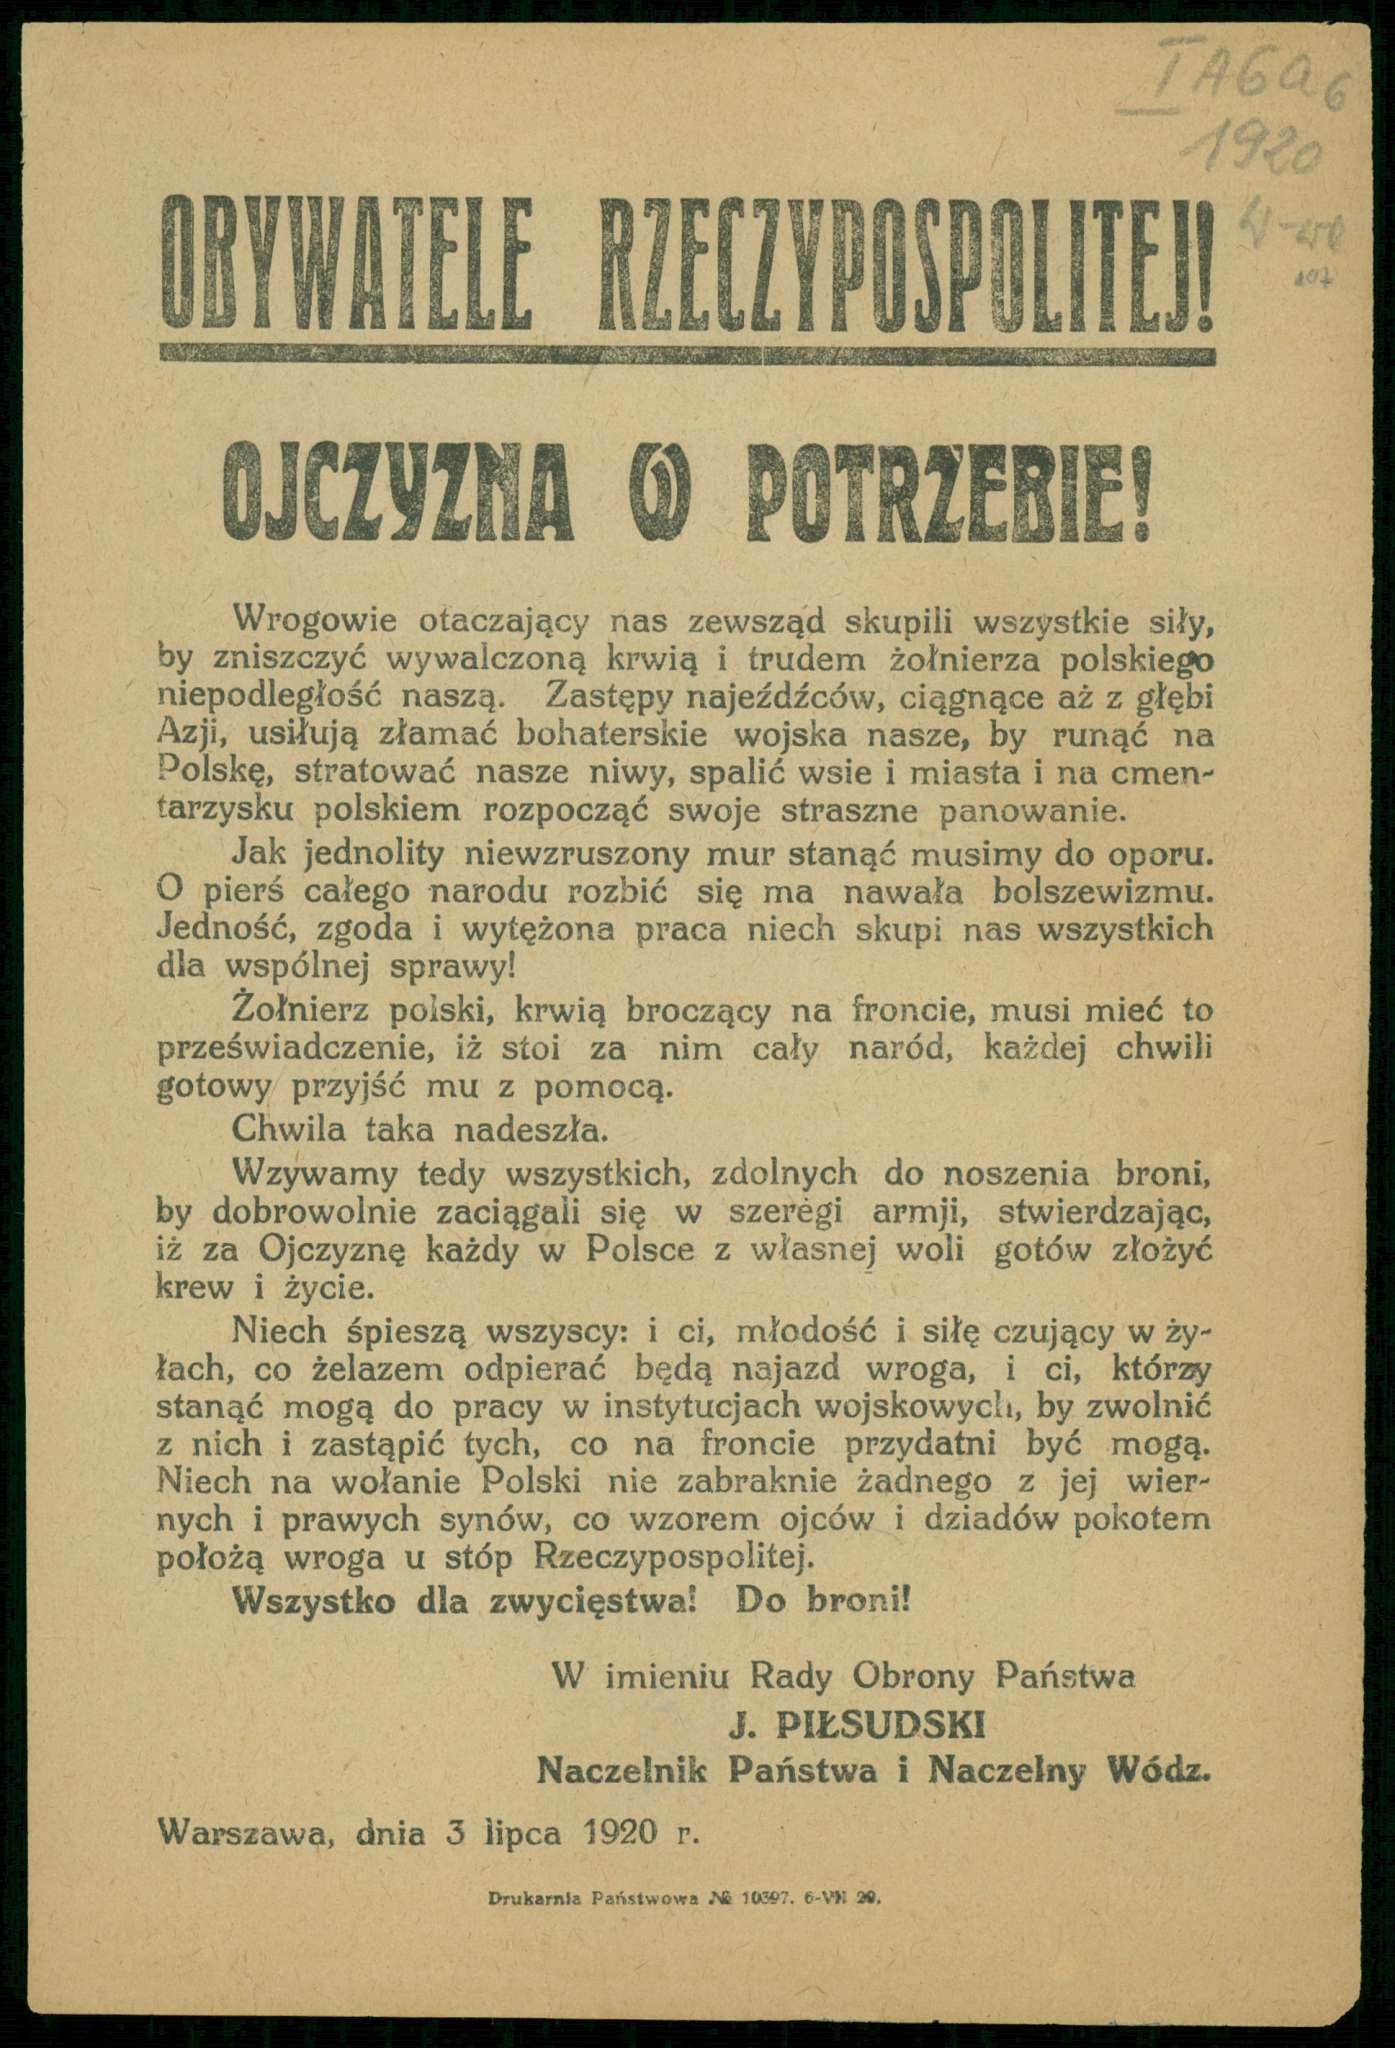  Odezwa Józefa Piłsudskiego z 3 lipca 1920 r. Źródło: Biblioteka Narodowa